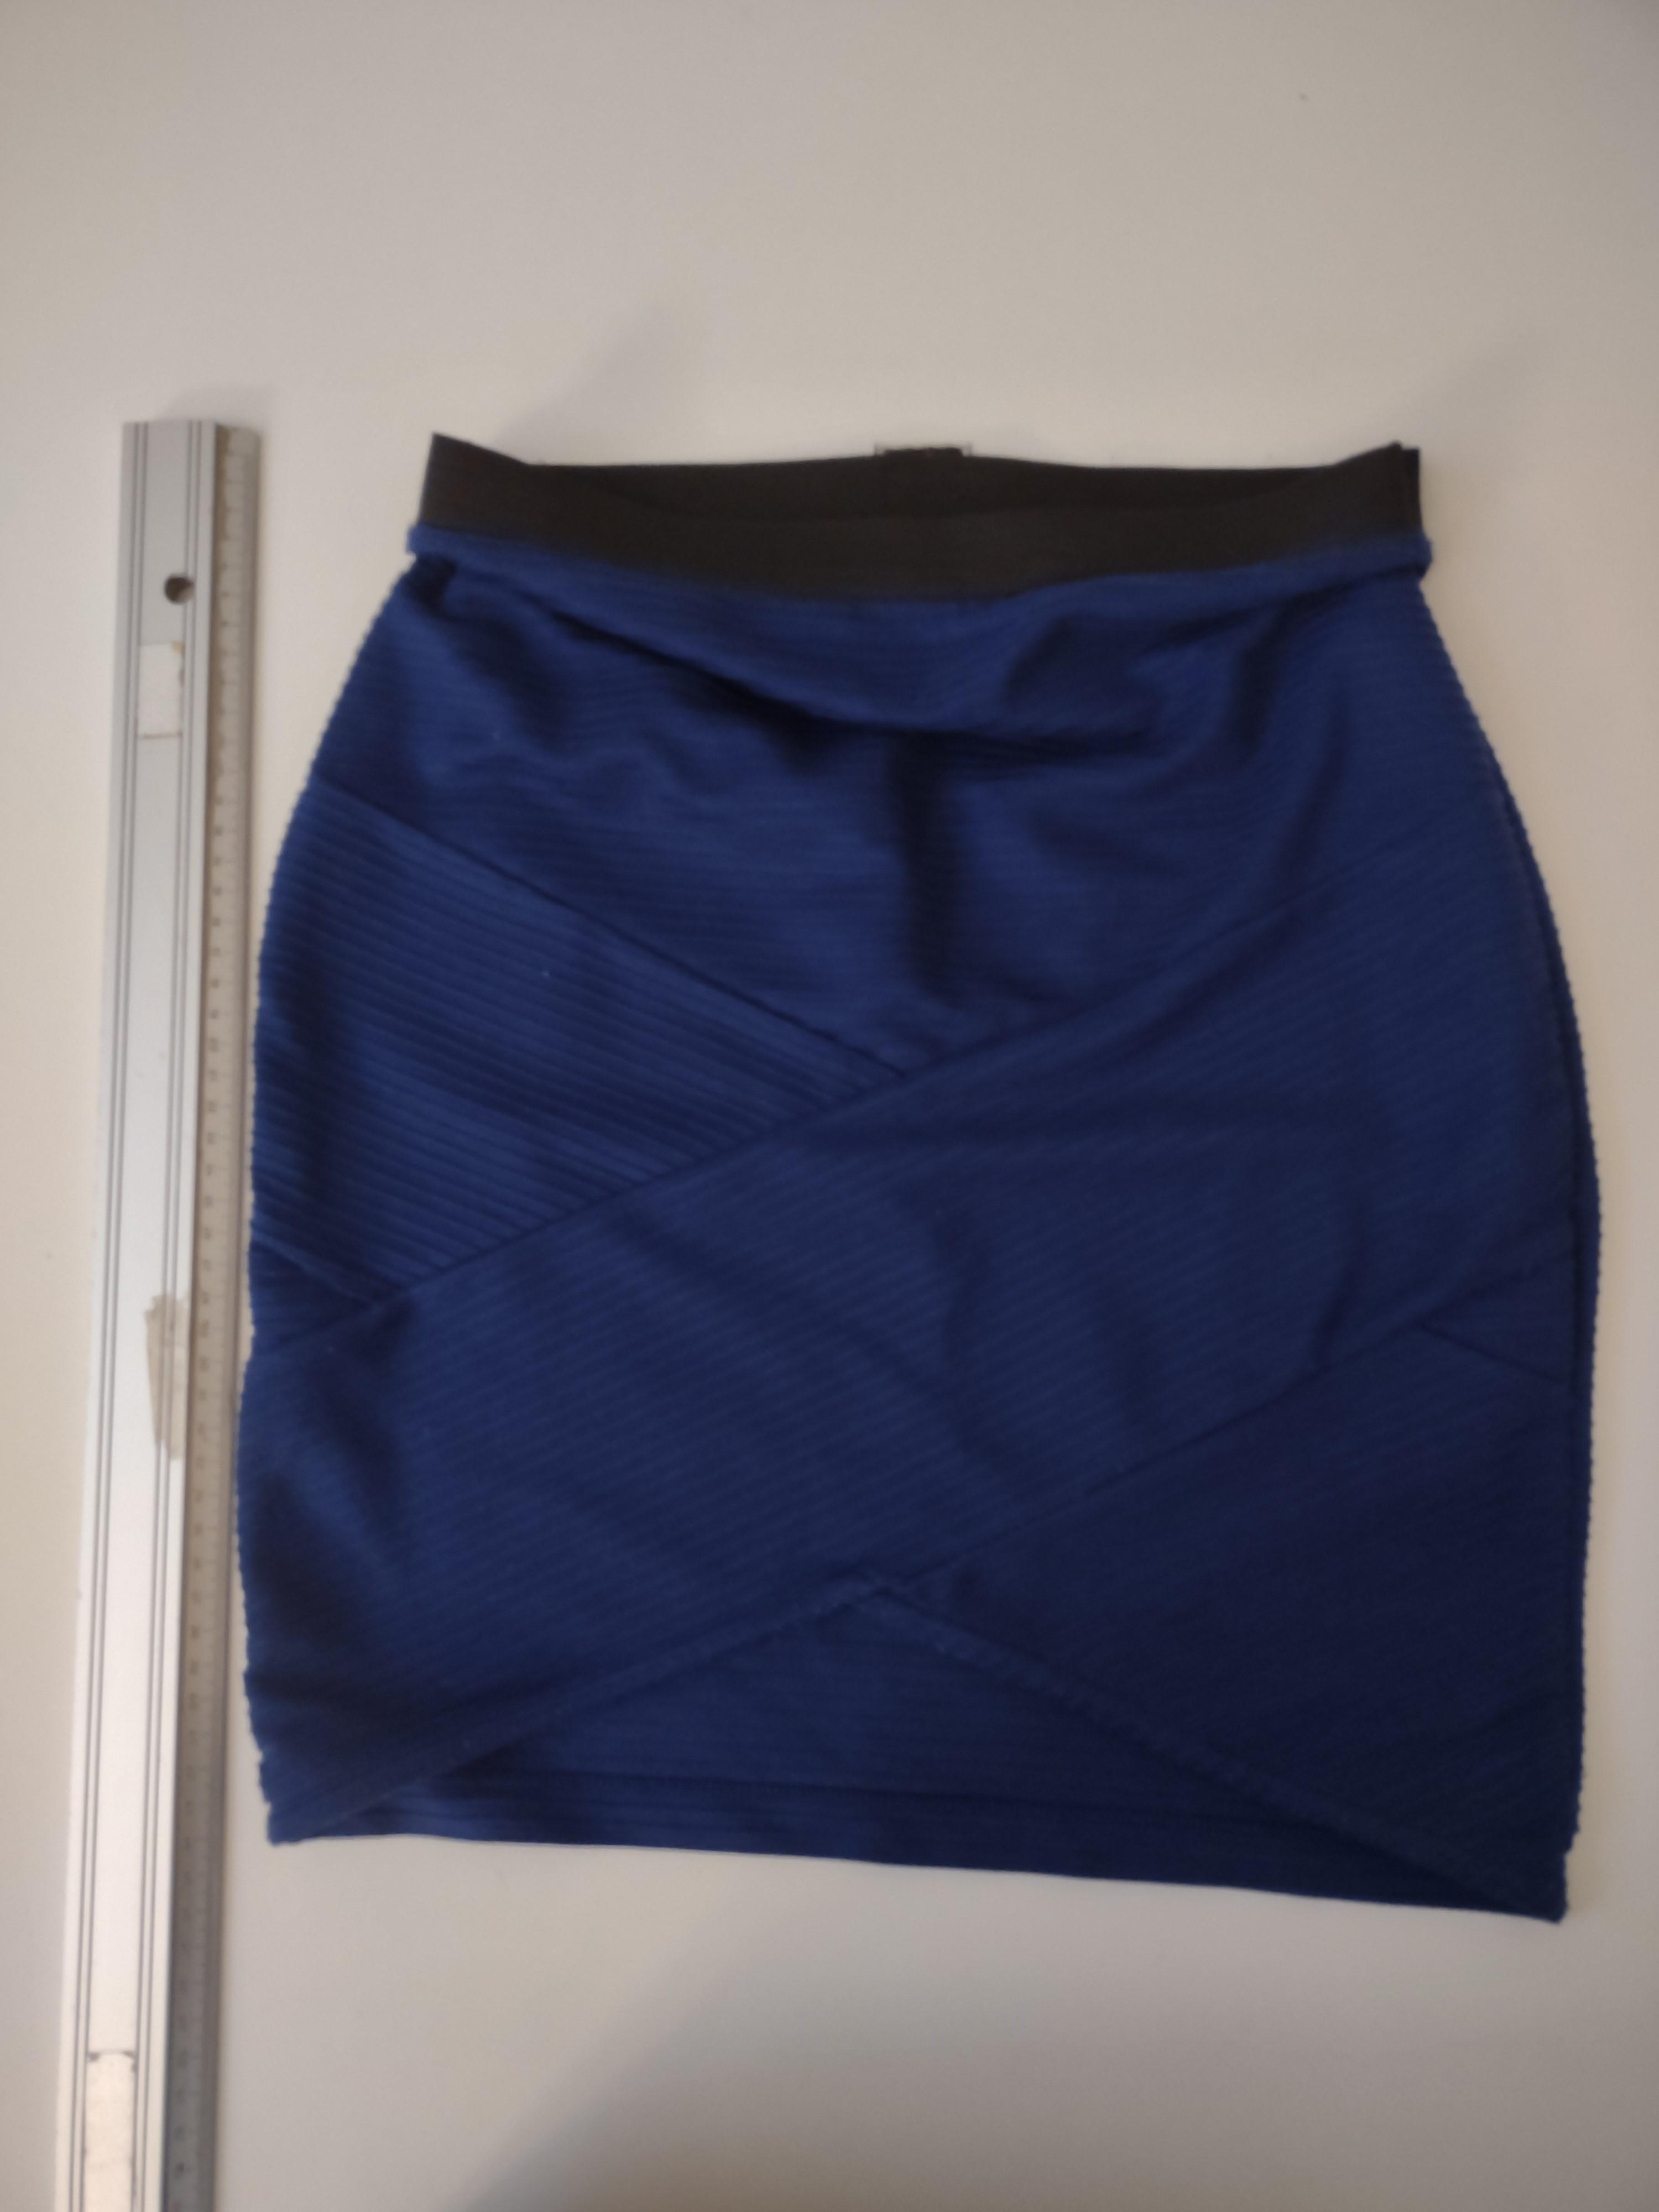 troc de troc jupe pimkie bleu 34-36 (pas d'étiquette taille) image 0